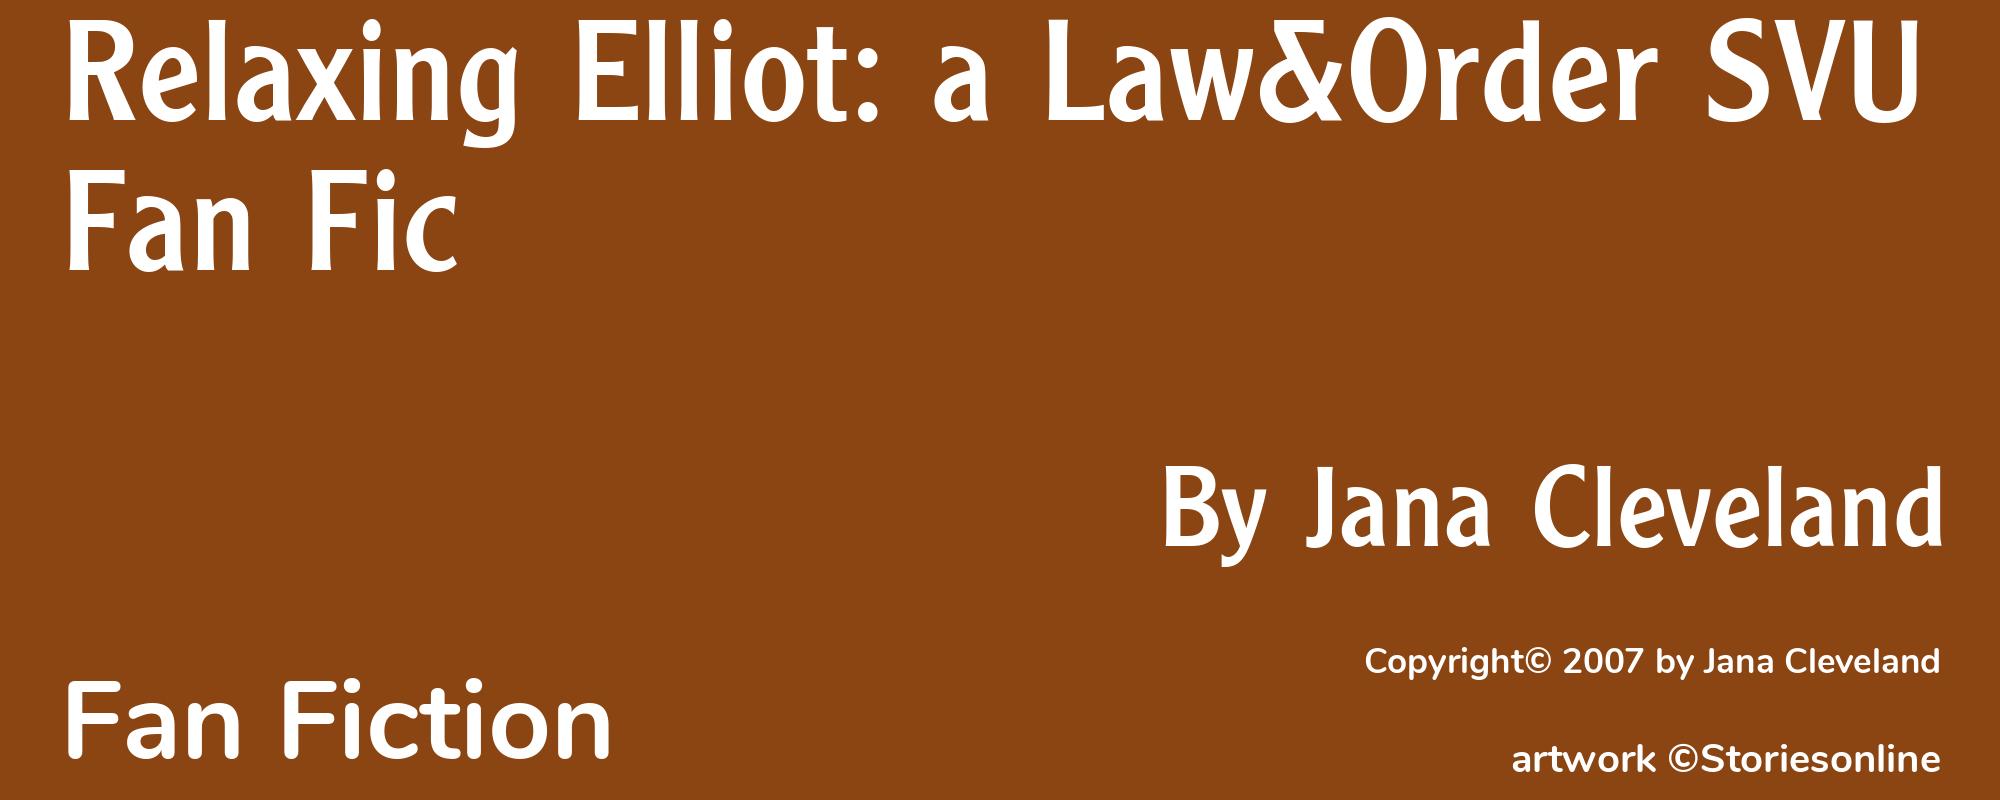 Relaxing Elliot: a Law&Order SVU Fan Fic - Cover